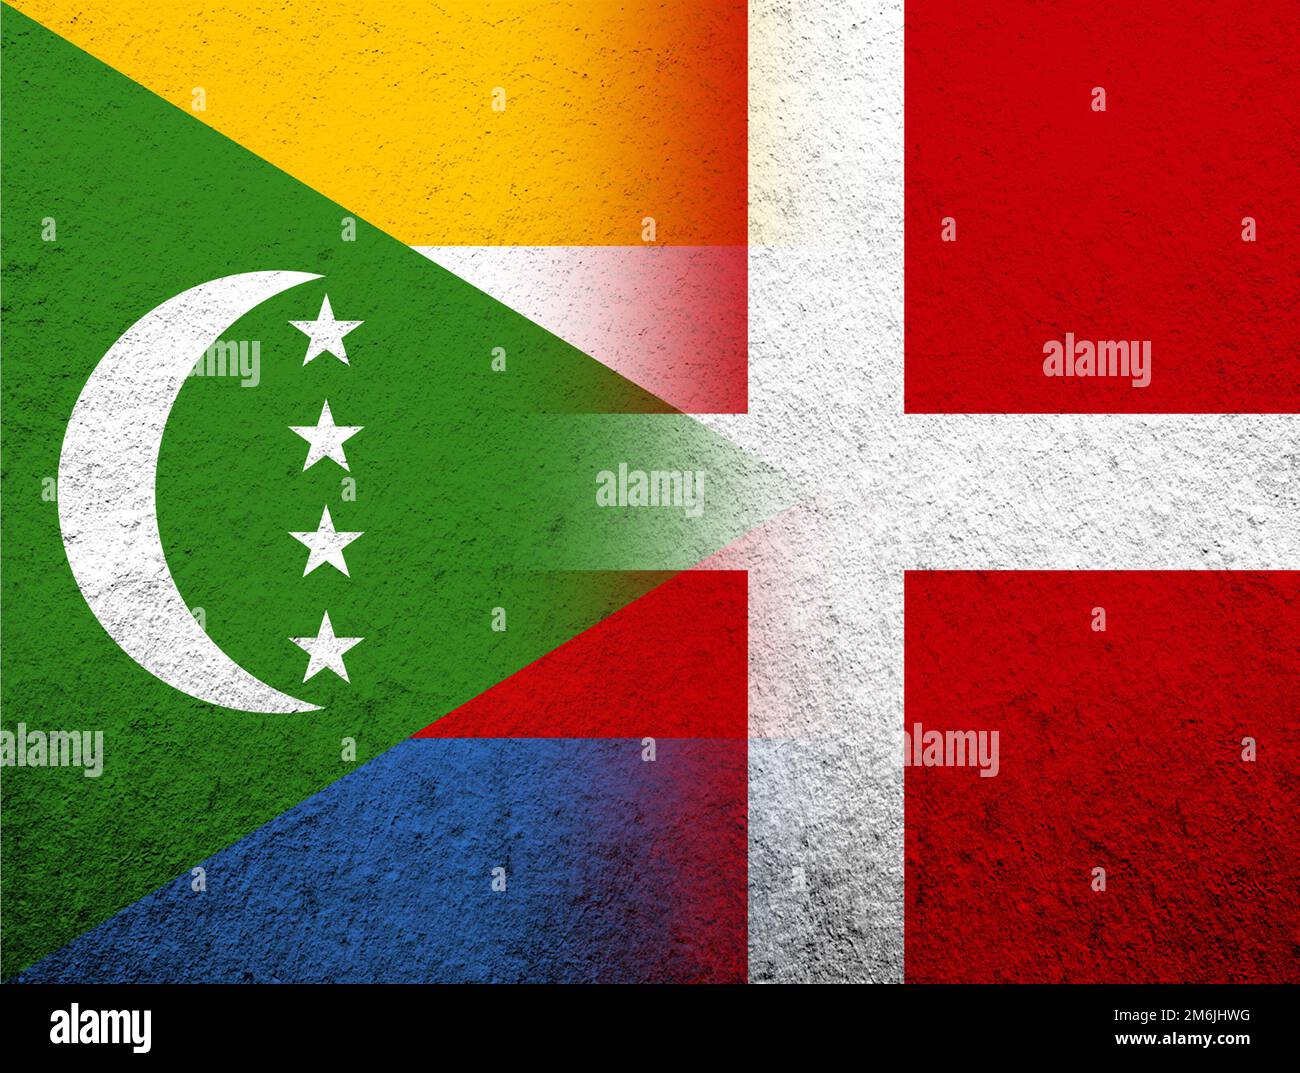 Le Royaume de Danemark drapeau national avec l'Union des Comores drapeau national. Grunge l'arrière-plan Banque D'Images